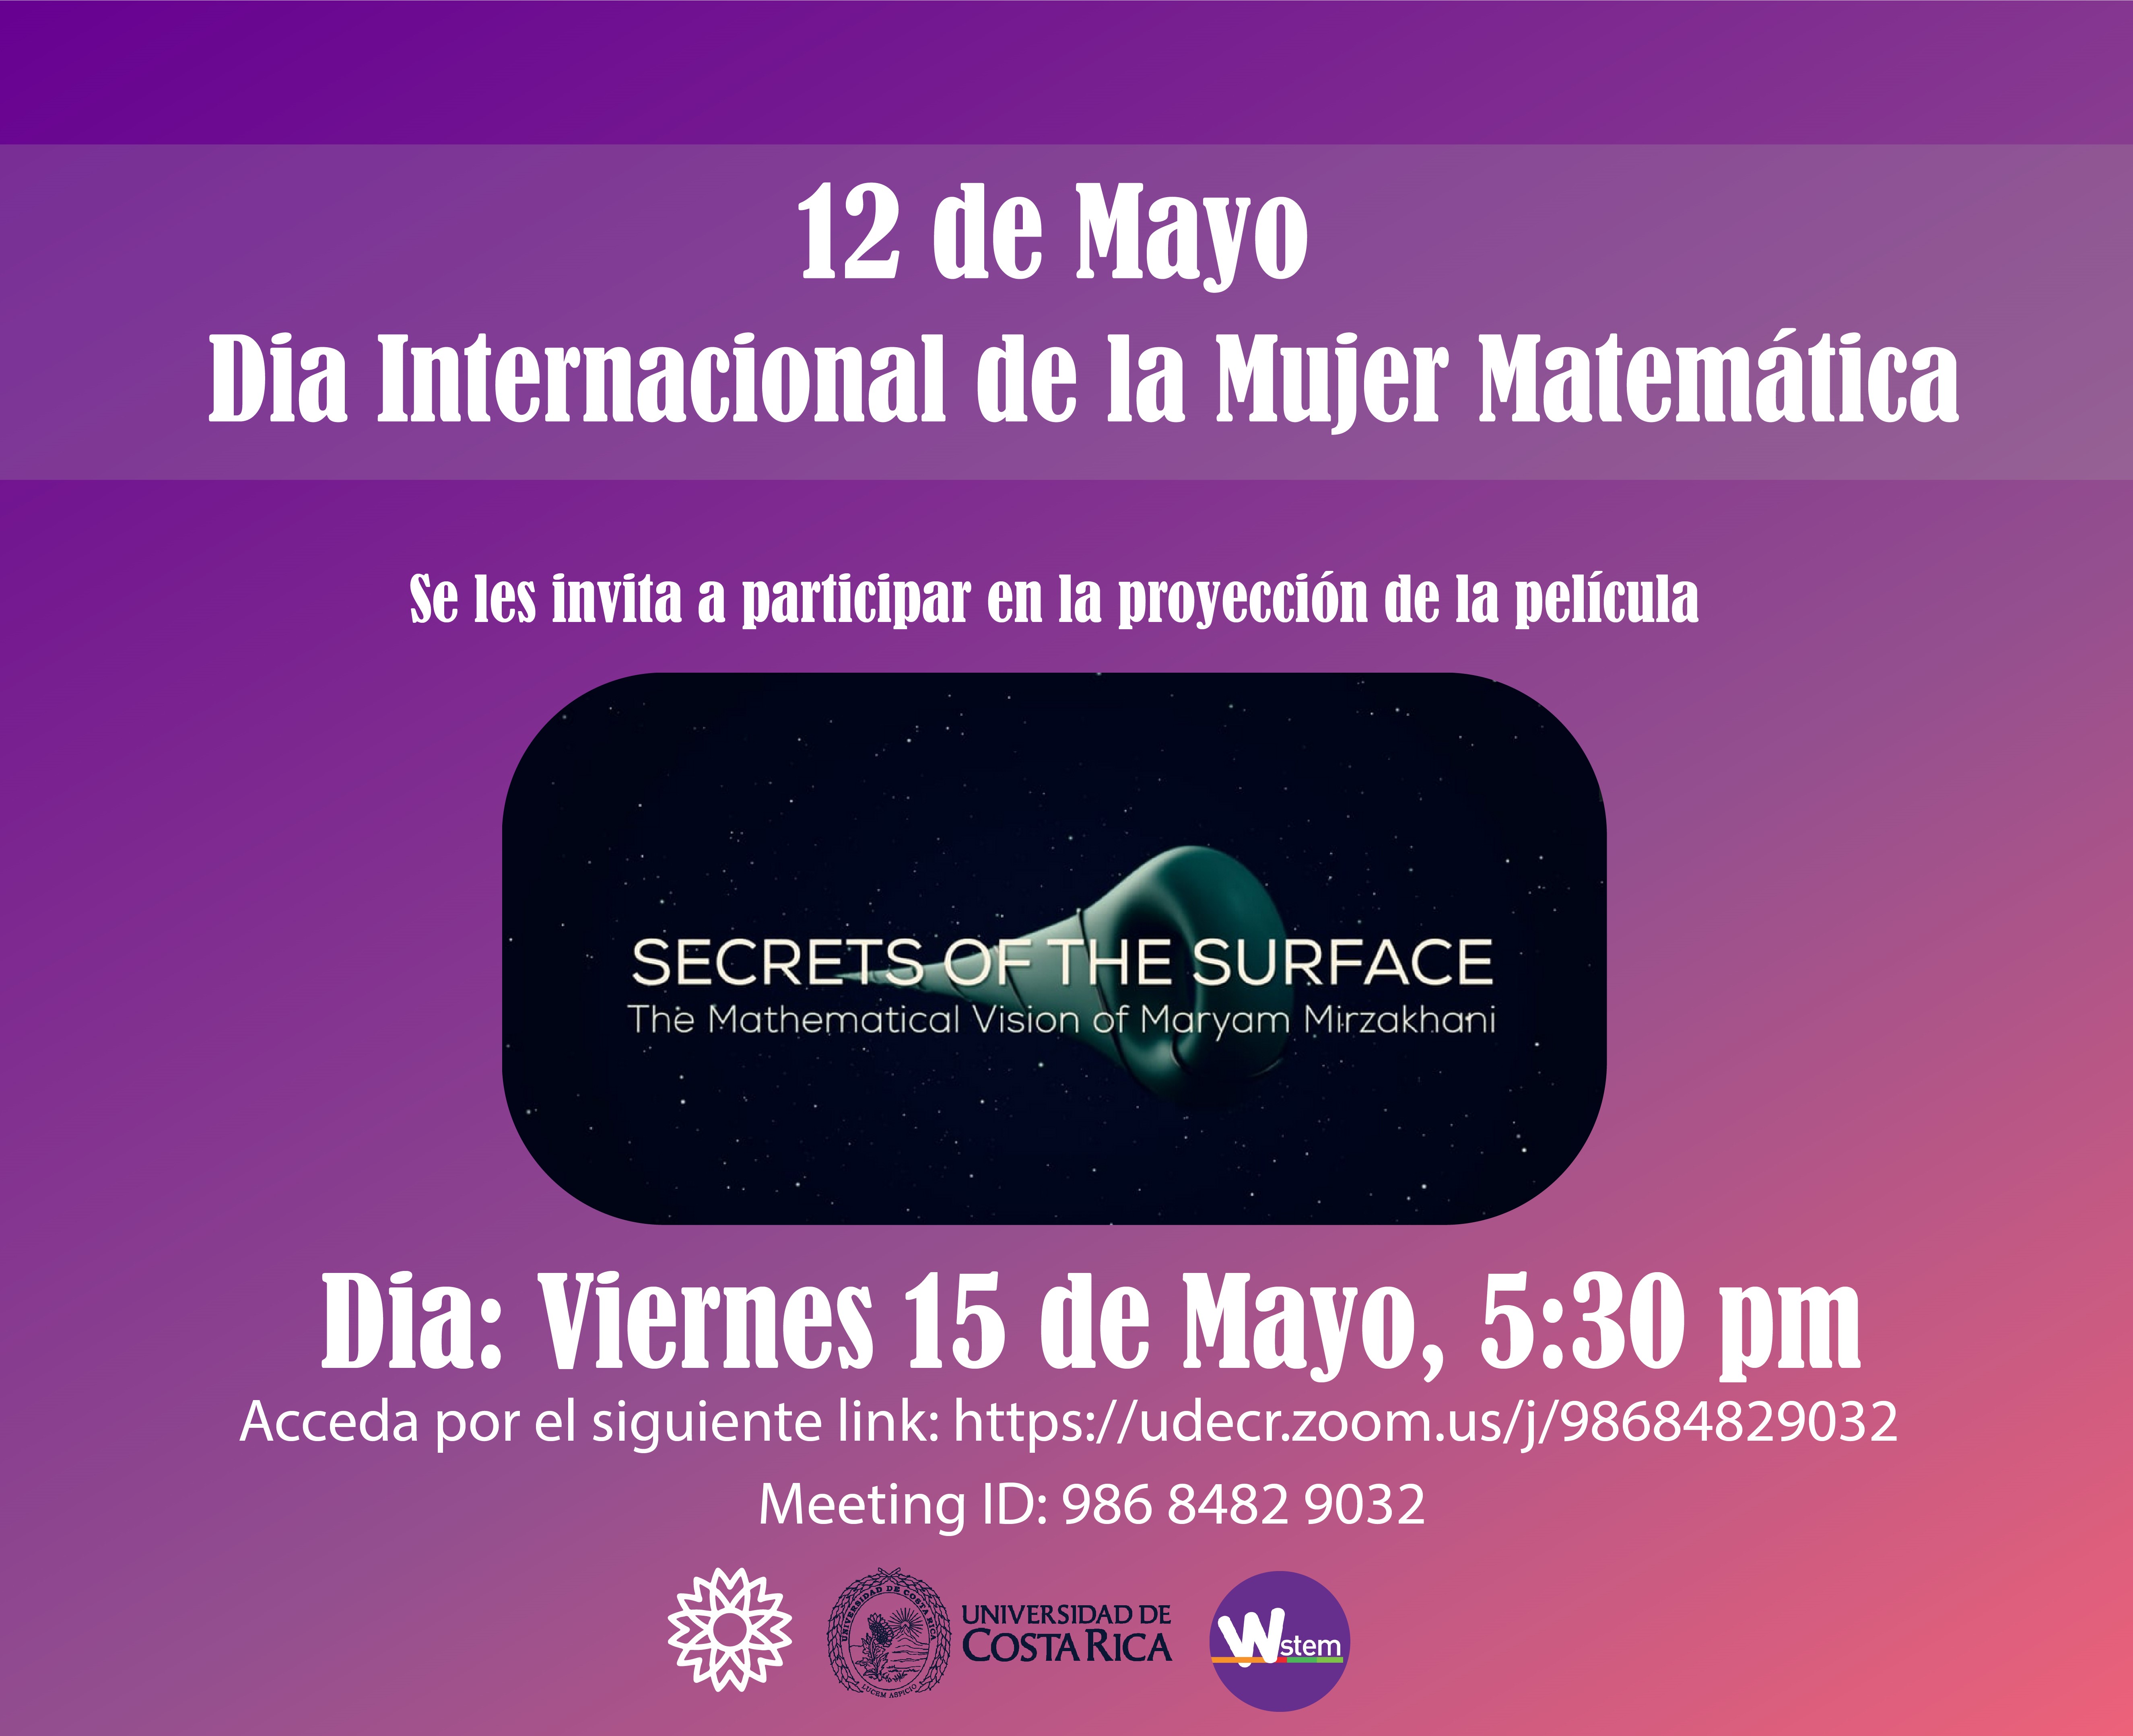 12 de Mayo. Día Internacional de la Mujer Matemática. Se les invita a participar en la proyección de la película "Secrets of the Surface". Día: viernes 15 de mayo, 5:30 pm.